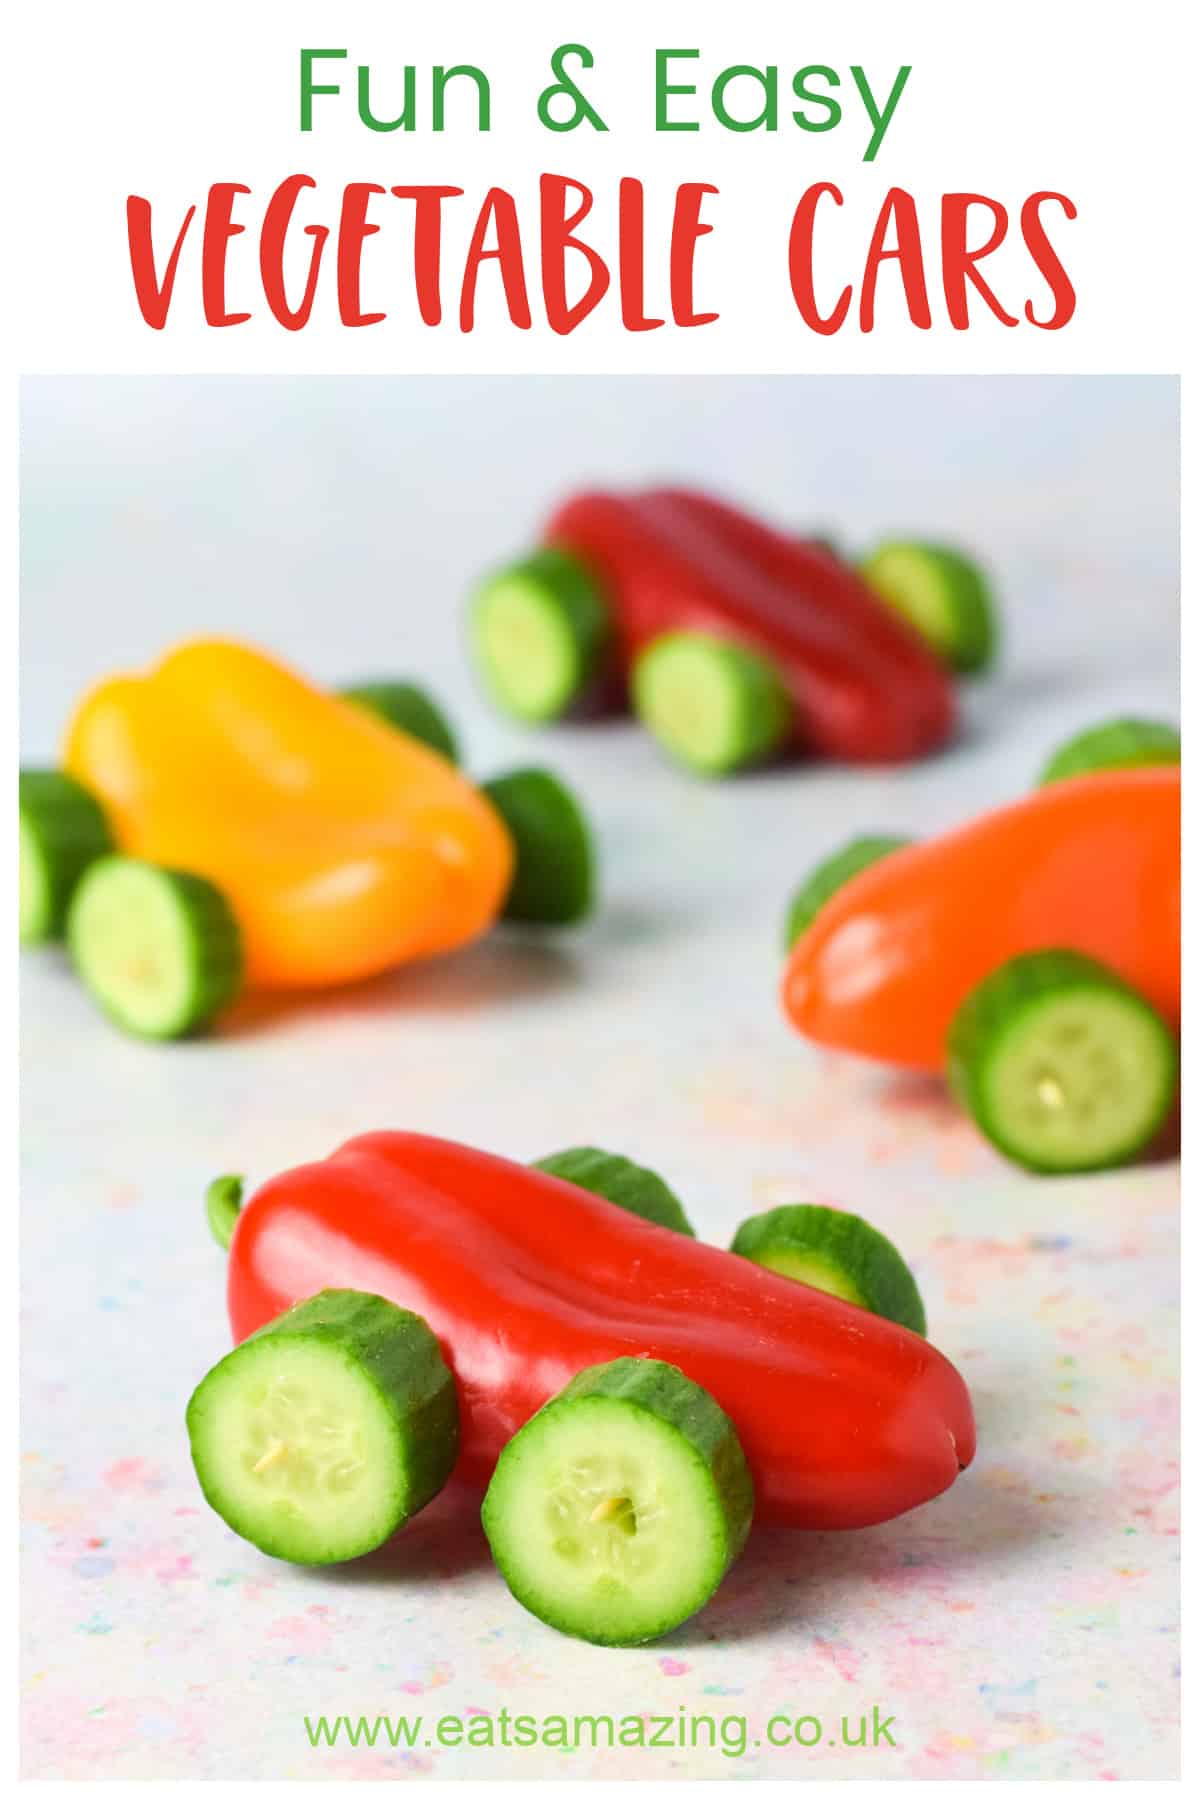 Ein lustiges und gesundes Gemüseauto-Rezept – ideal für Essen für eine Auto-Themenparty oder Snacks nach der Schule für Kinder